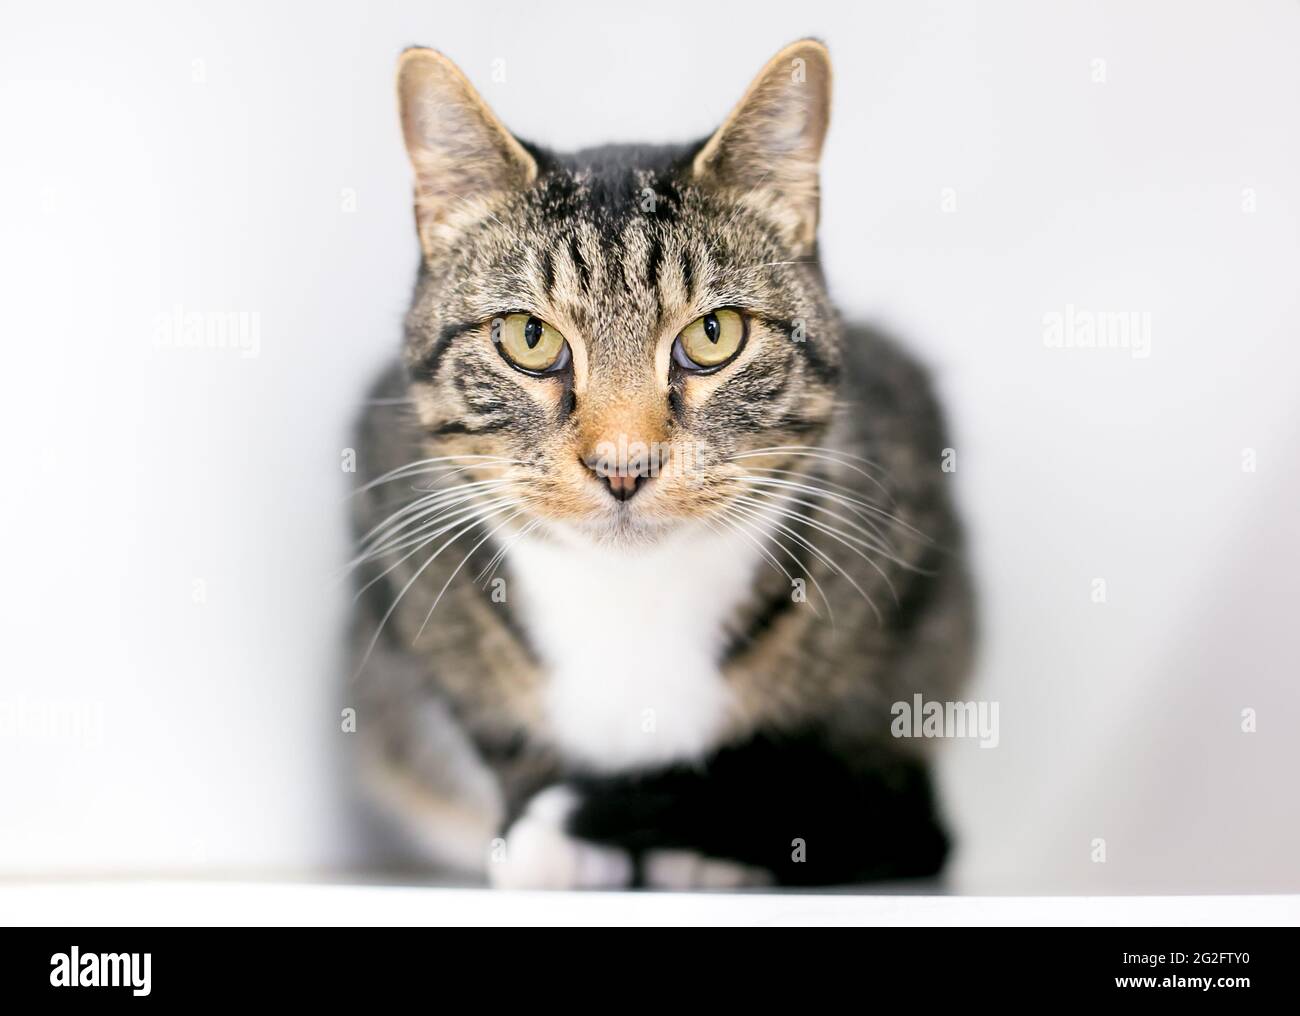 Eine kurzhaarige, tabby kauernde Katze, die ernsthaft auf die Kamera starrt Stockfoto